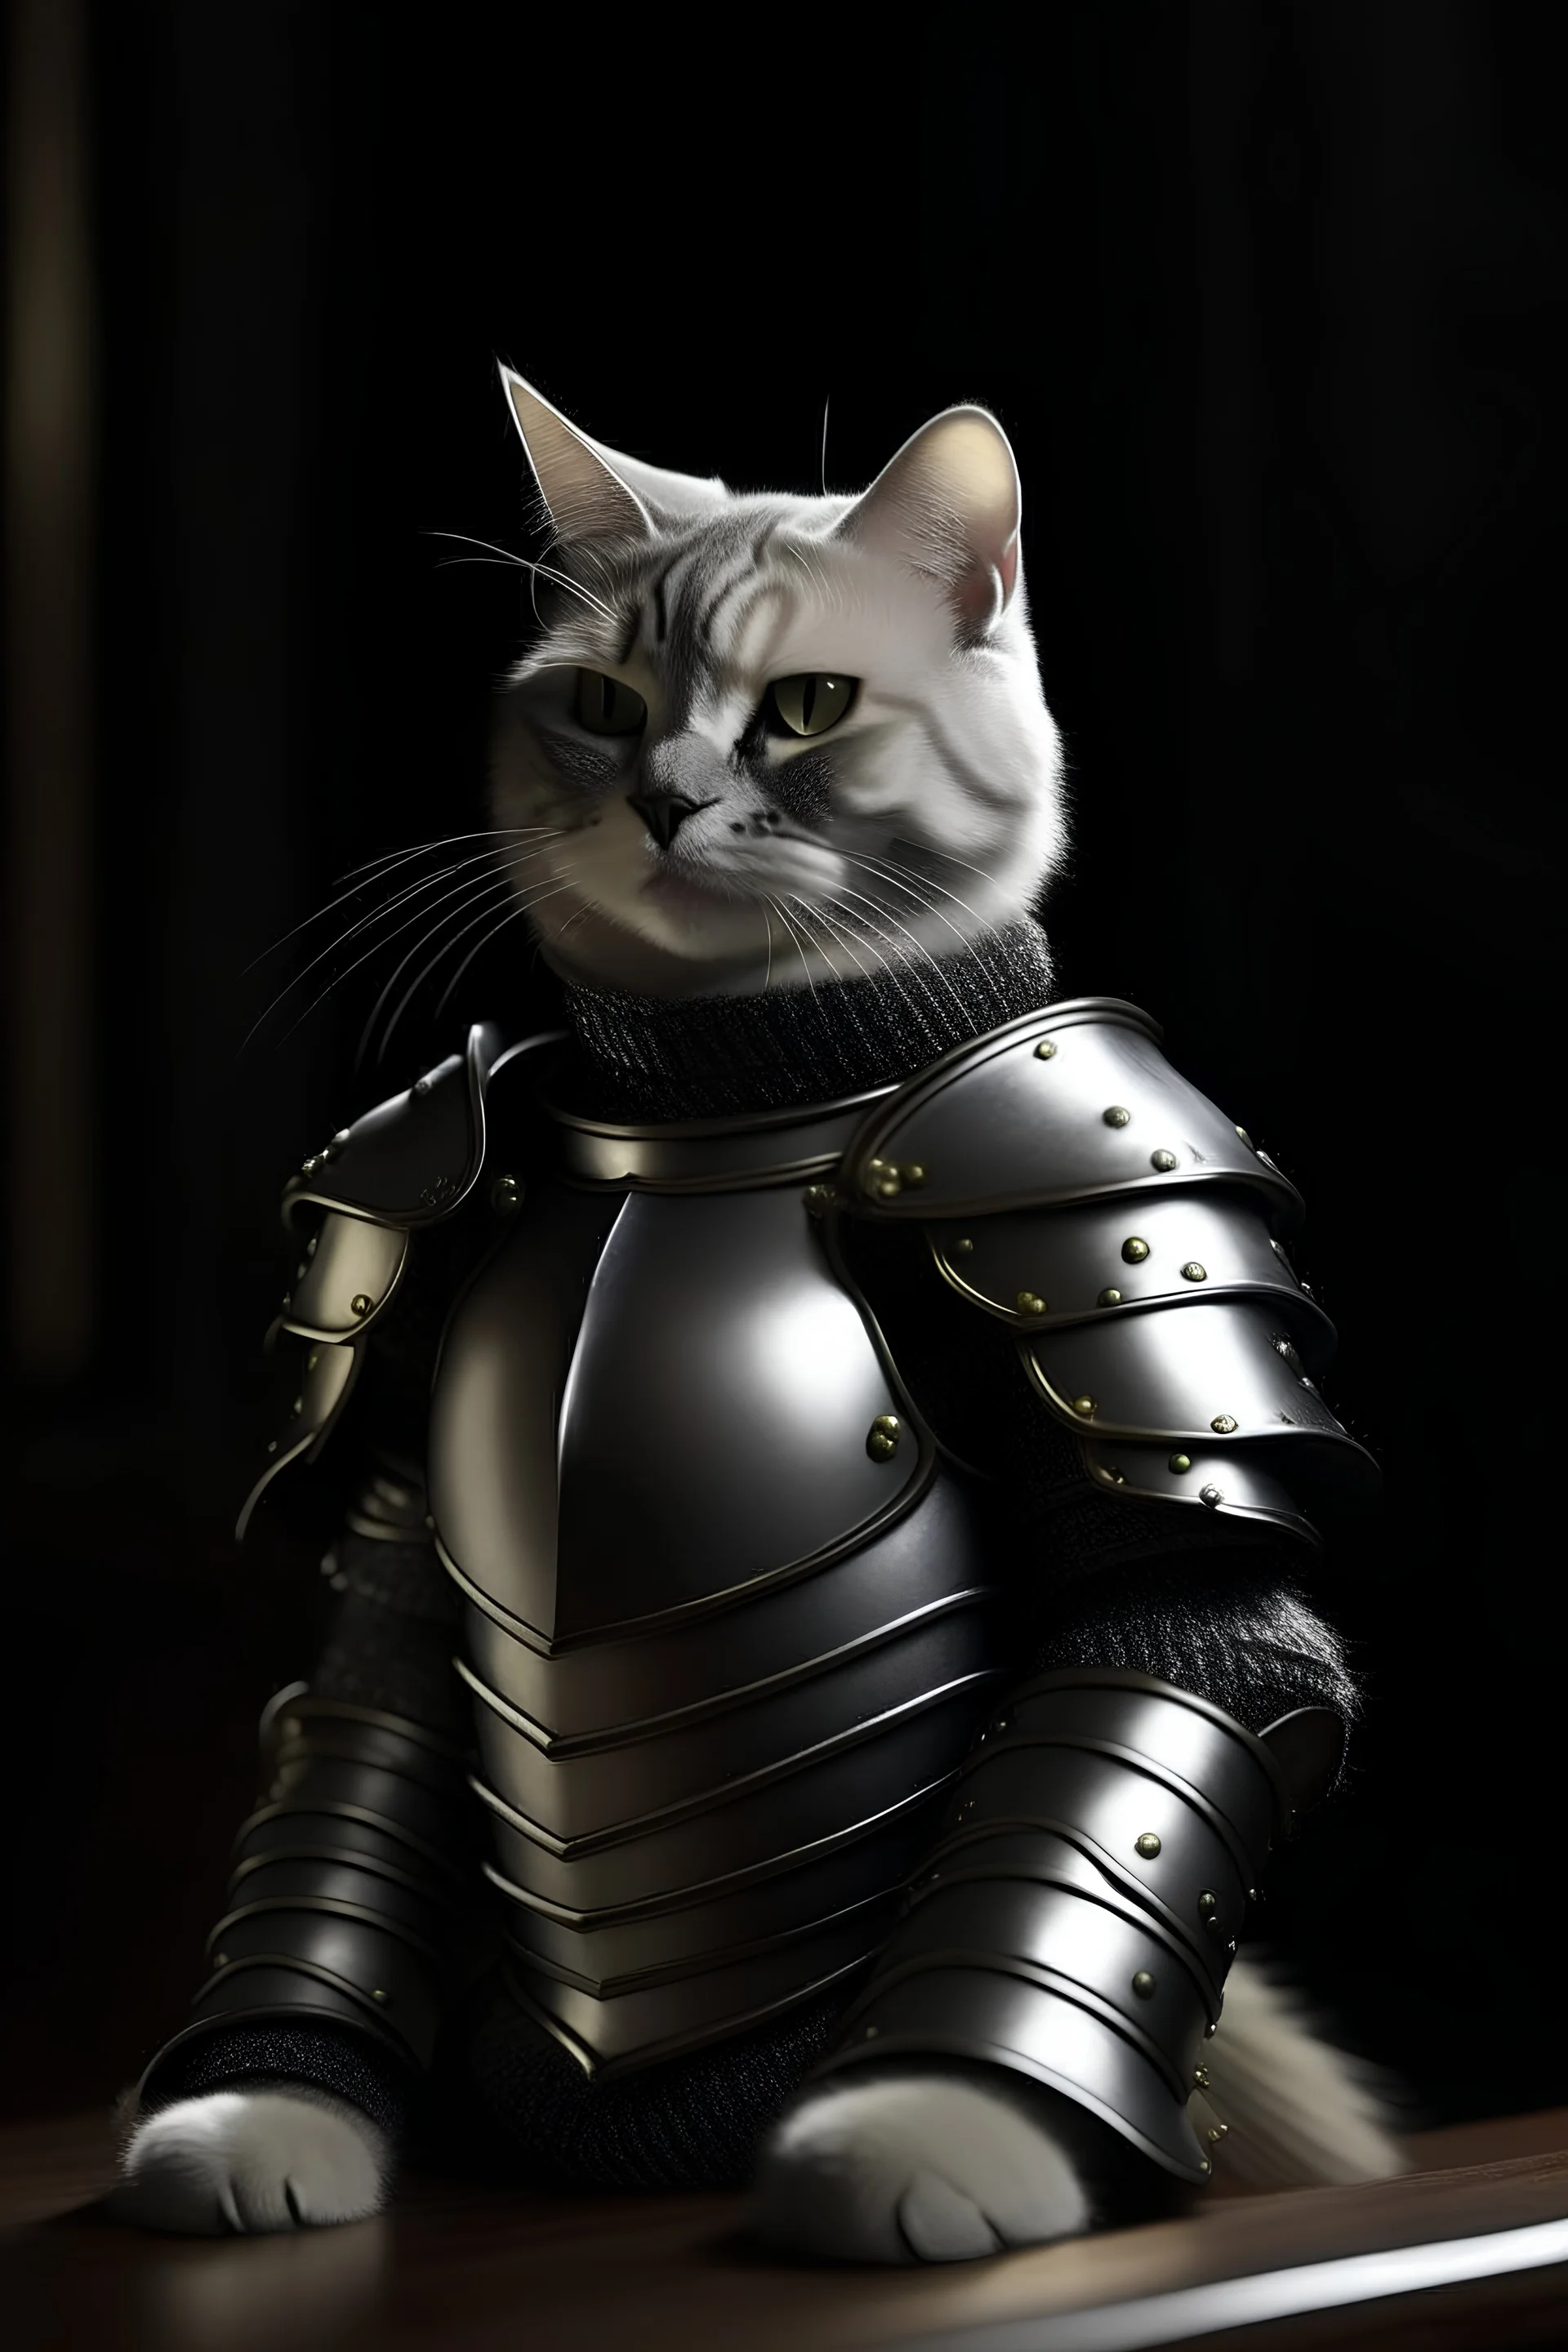 cat knight in armor